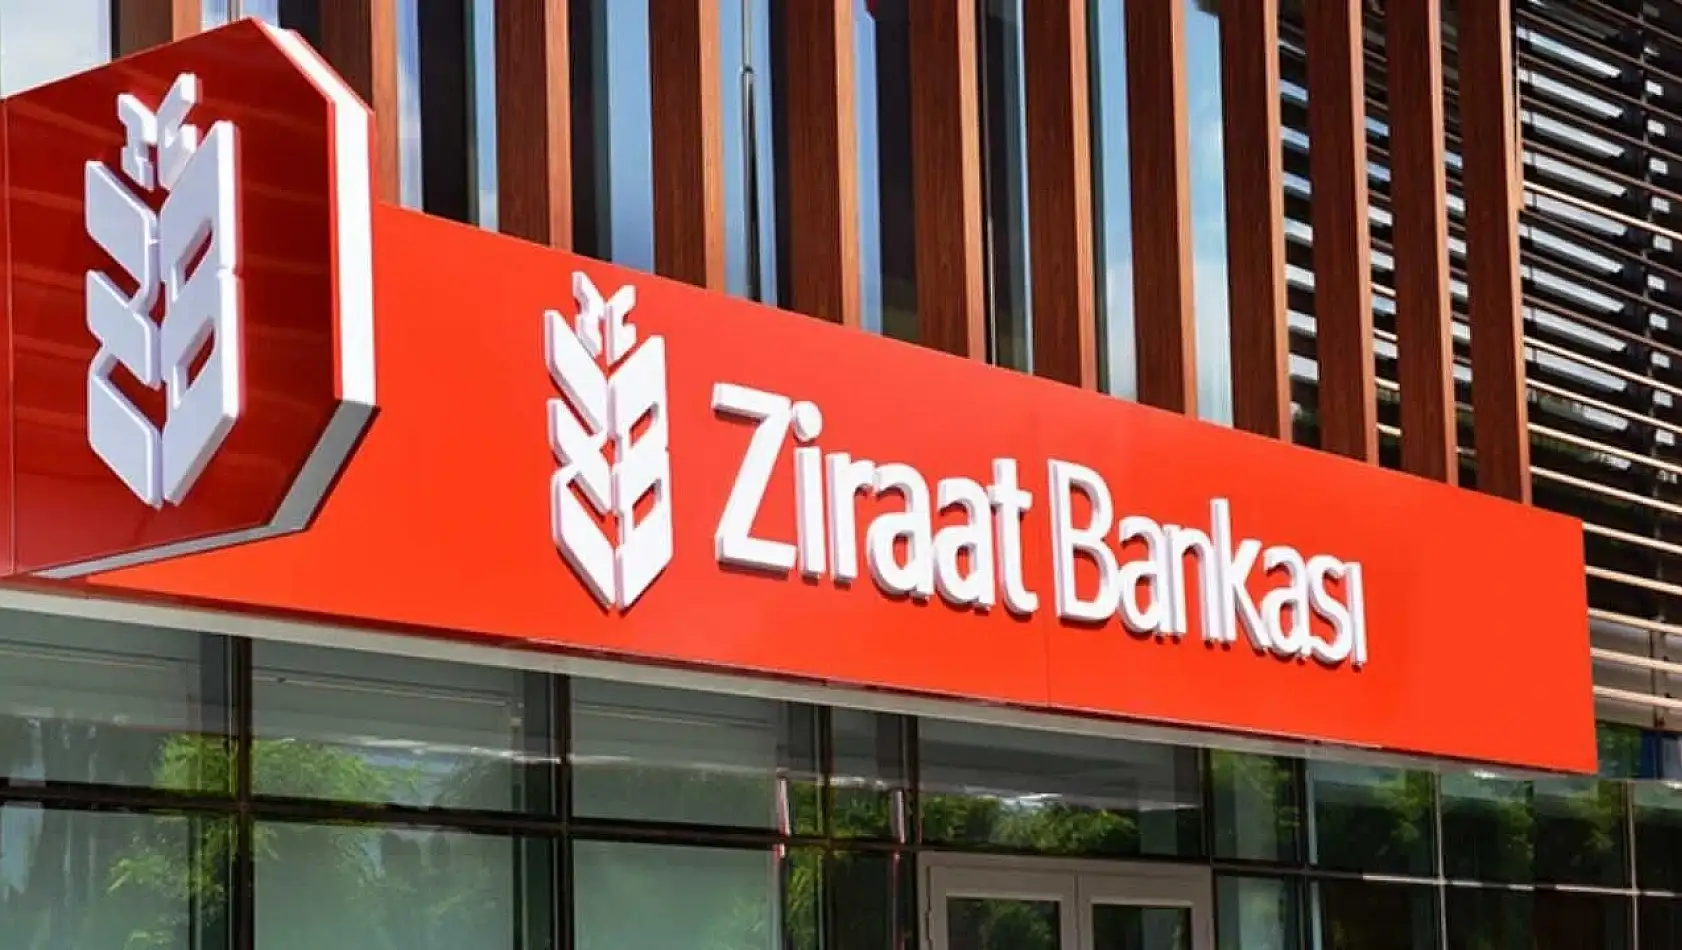 Ziraat Bankası müşterilerine özel temmuz fırsatı: 8500 TL Bankkart Llra kazanma şansı